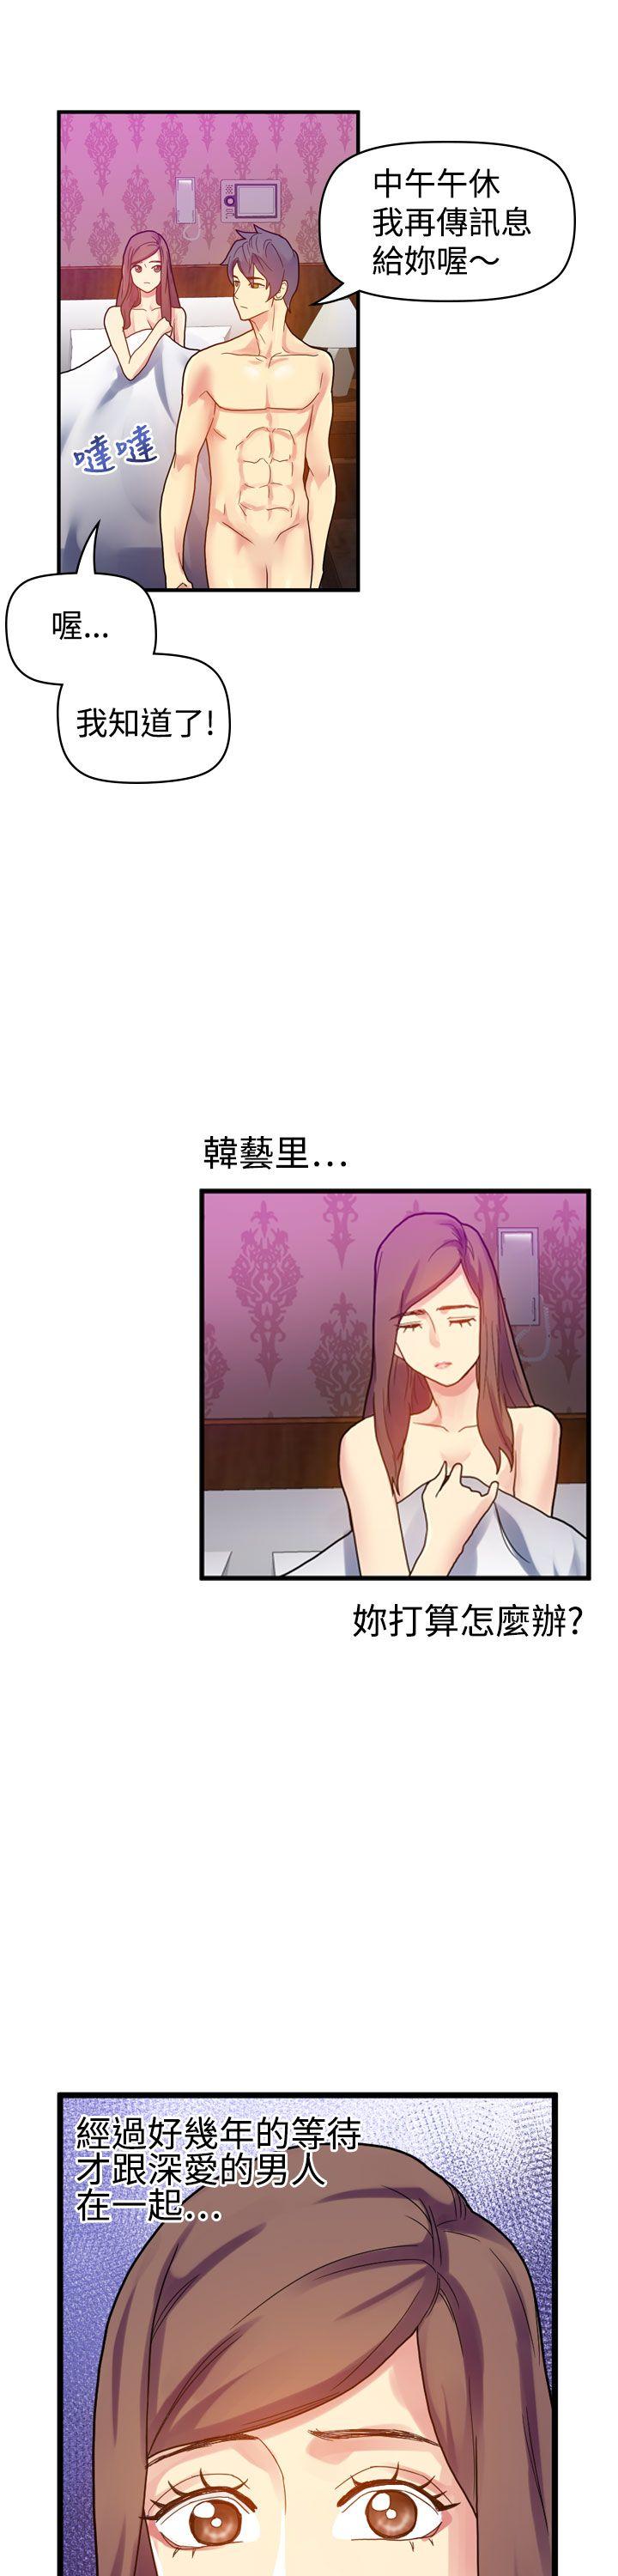 韩国污漫画 幻想中的她(完結) 第9话 21